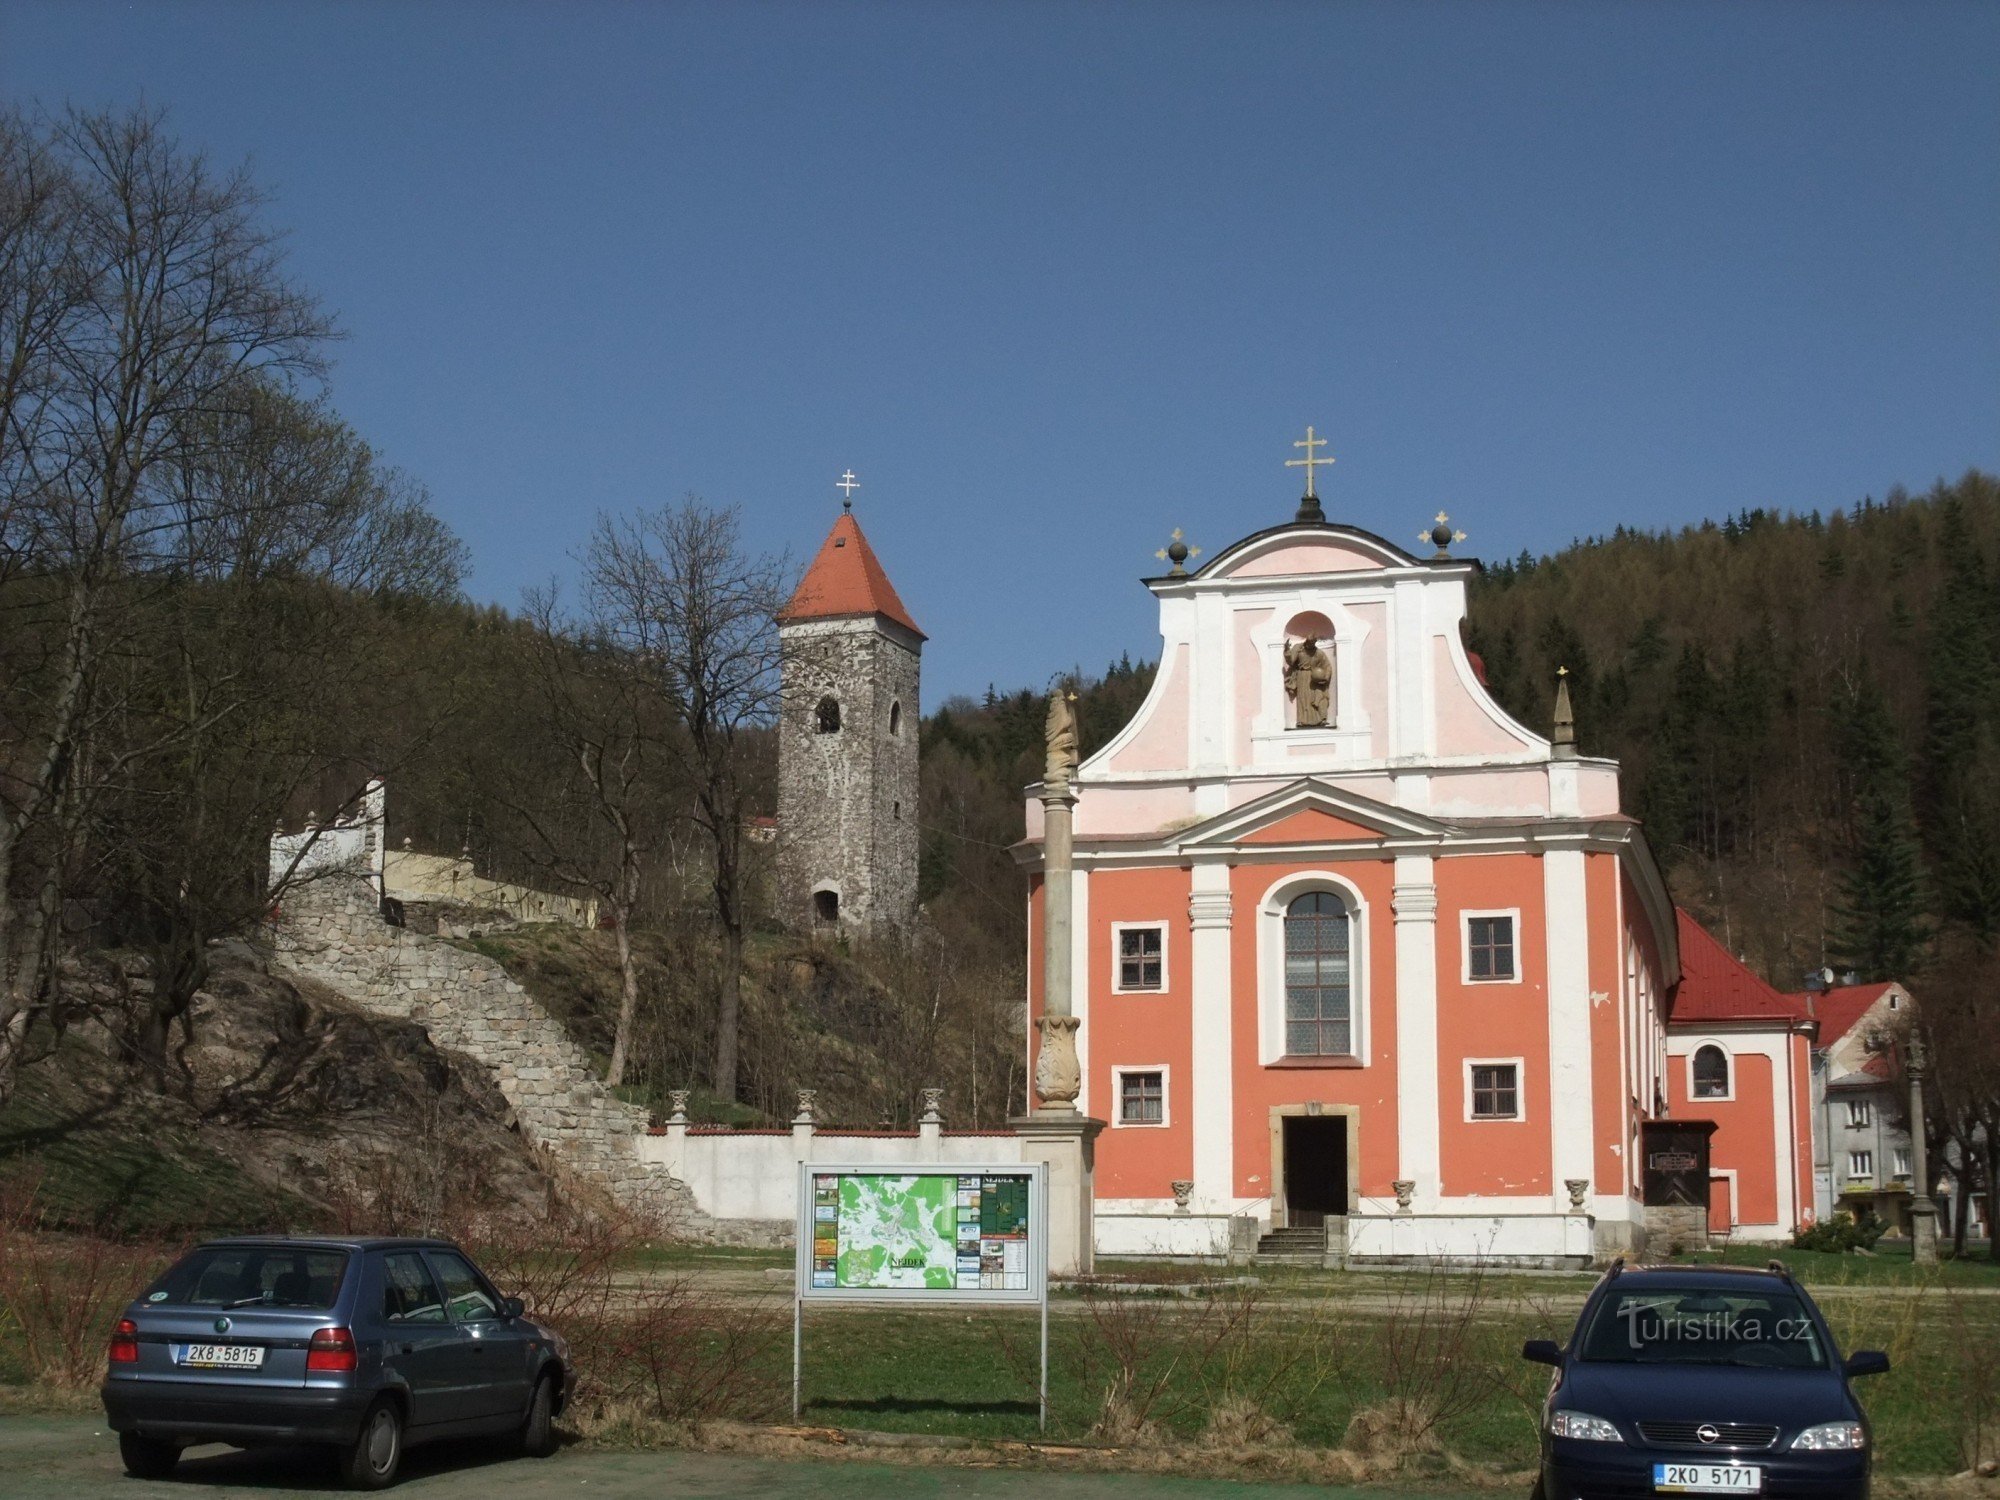 Castle tower in Nejdek